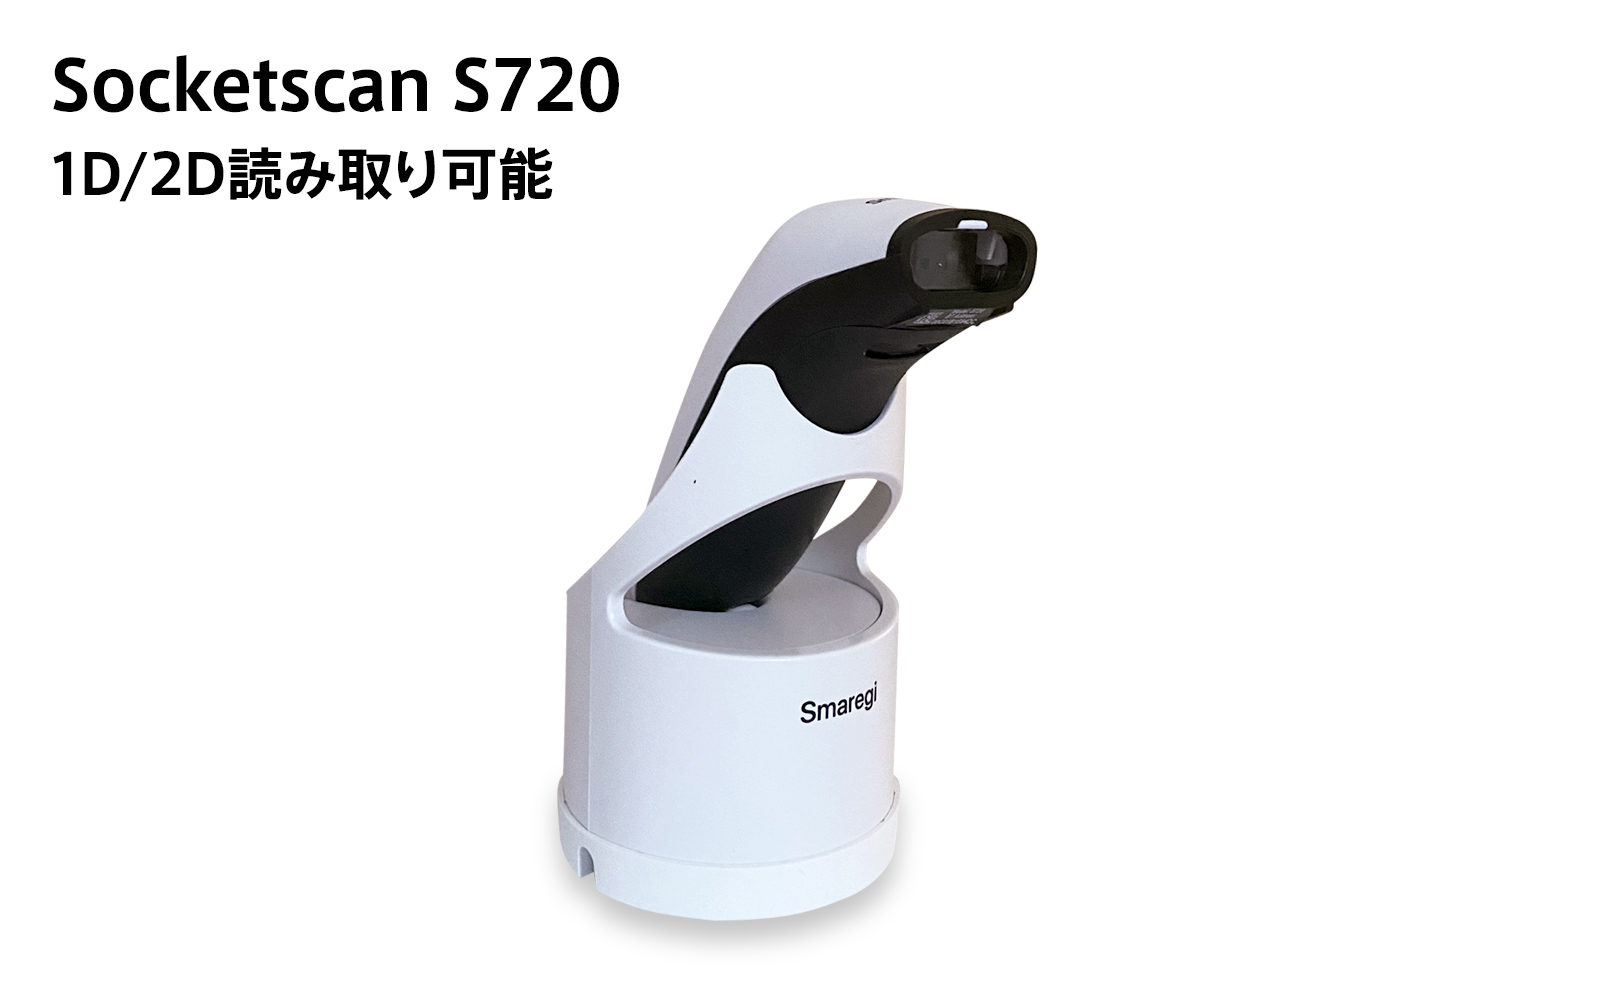 [Smaregiモデル] Socketmobile SocketScan S720（1D/2Dスキャナー）